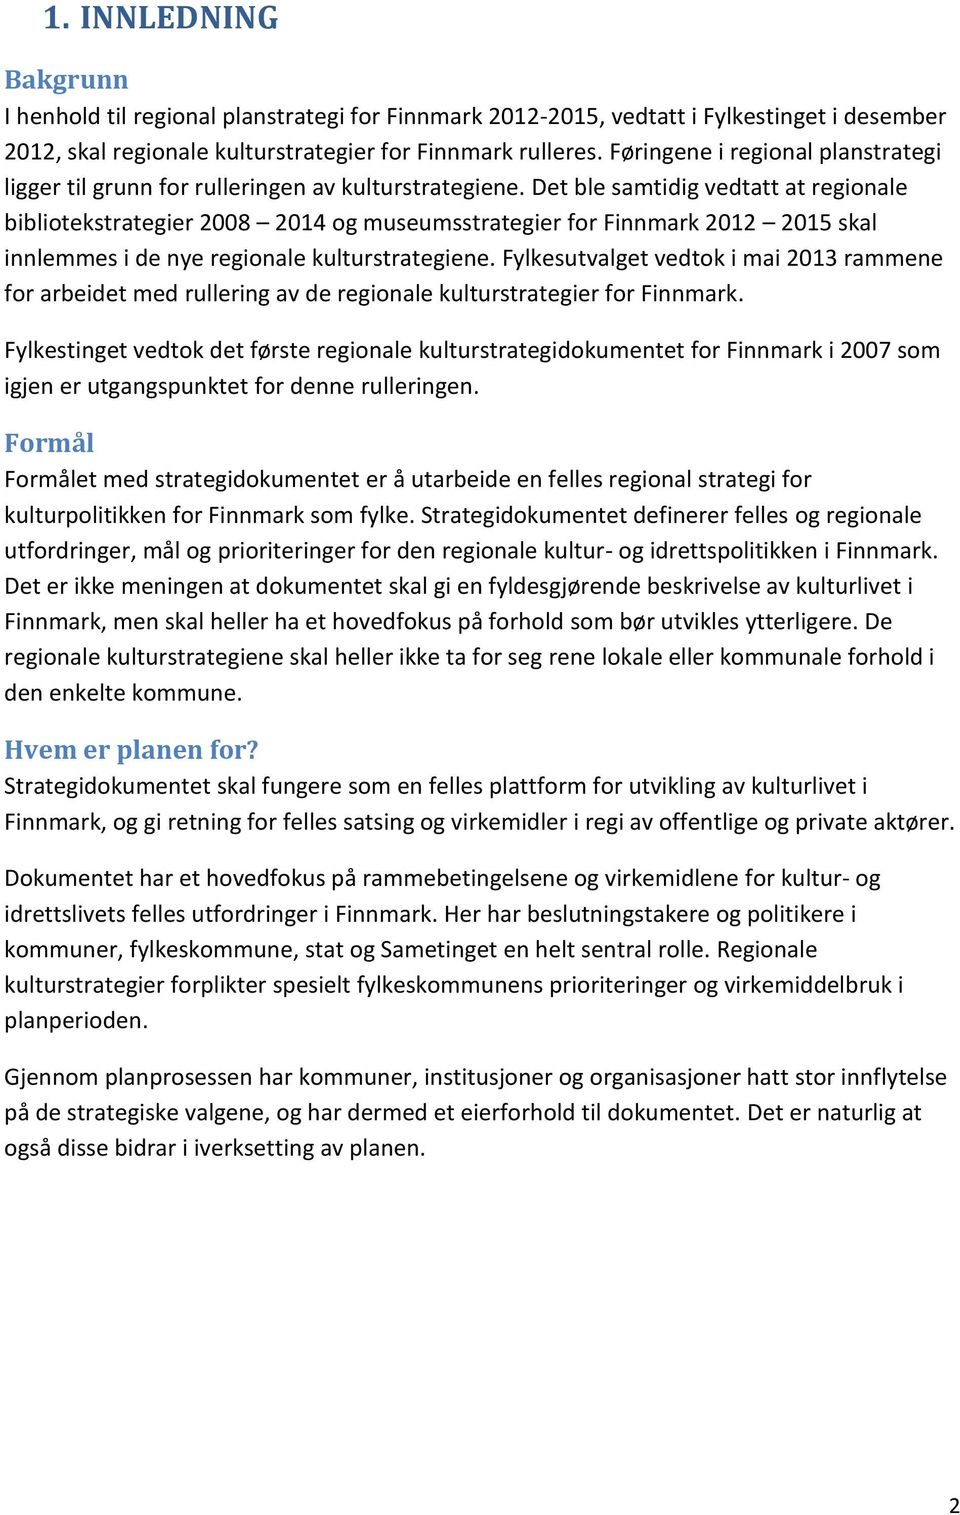 Det ble samtidig vedtatt at regionale bibliotekstrategier 2008 2014 og museumsstrategier for Finnmark 2012 2015 skal innlemmes i de nye regionale kulturstrategiene.